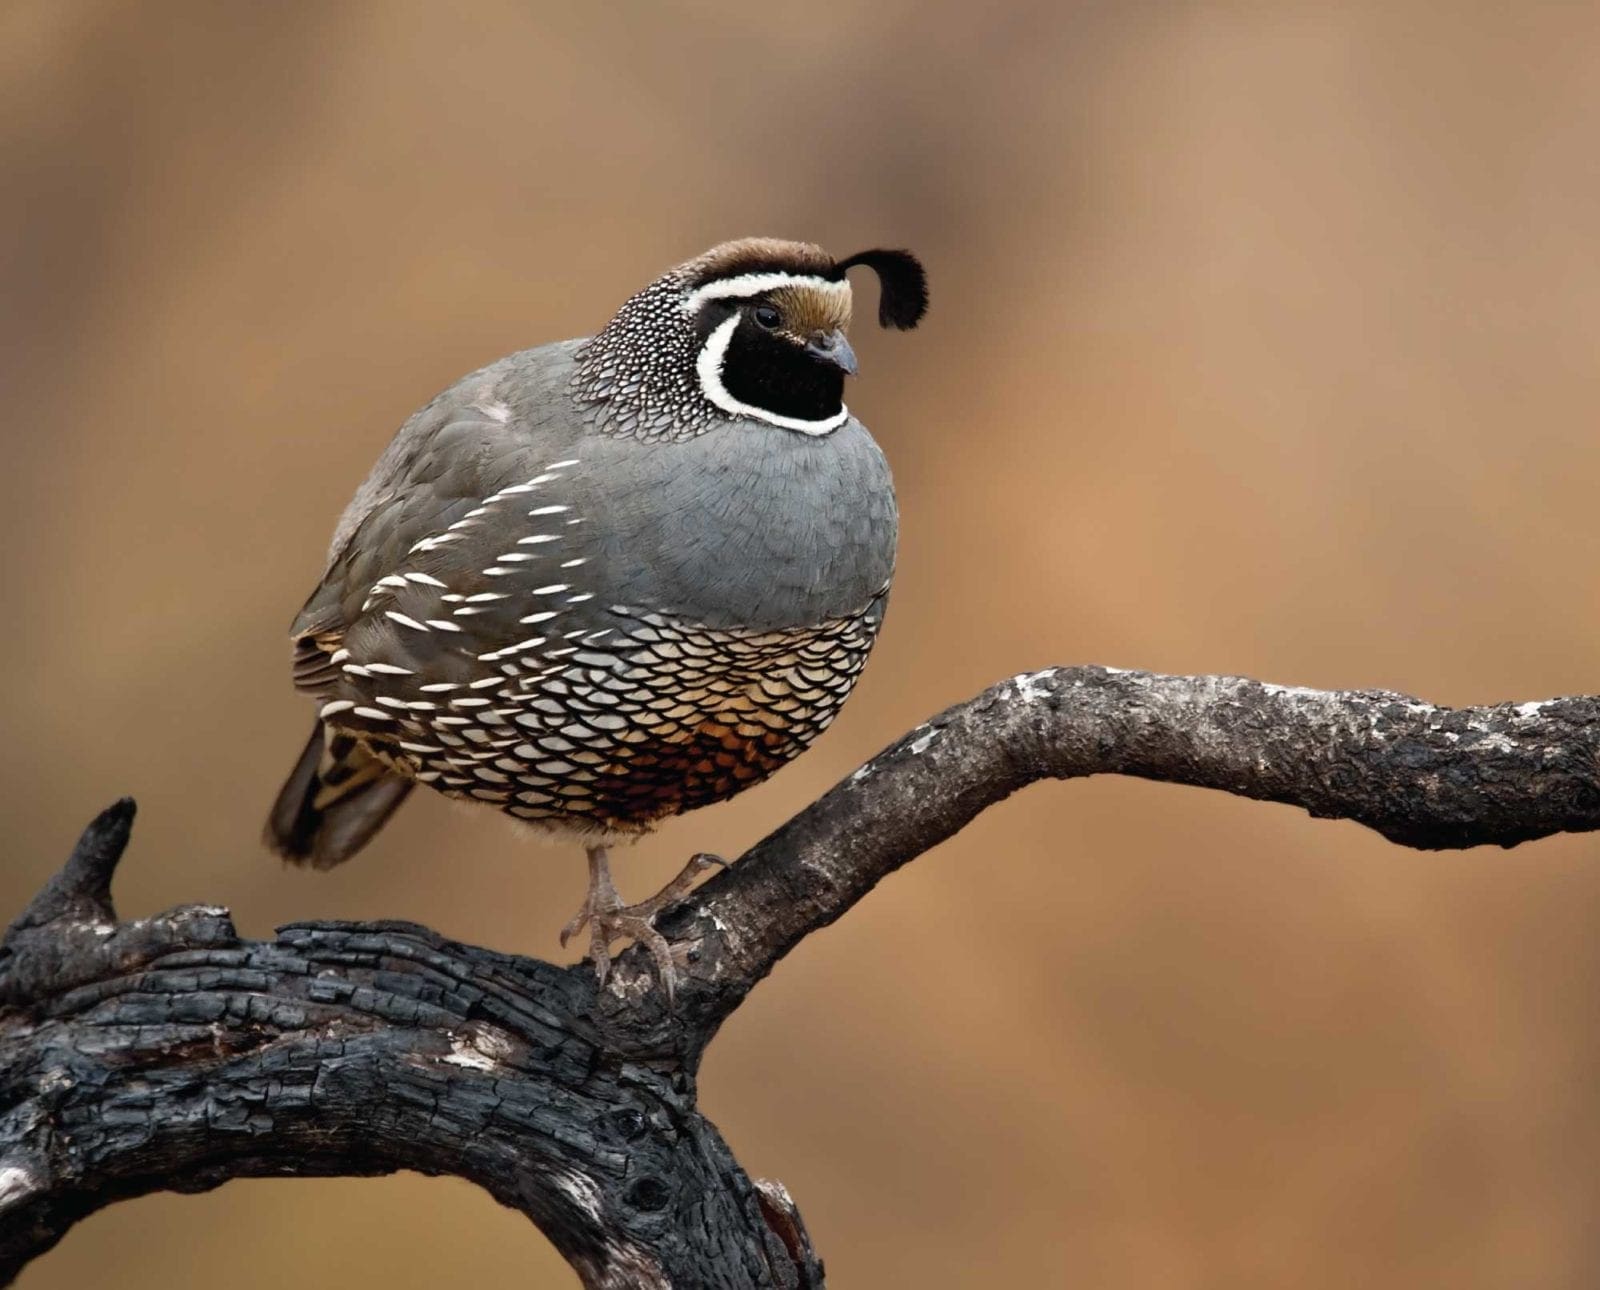 A California quail or valley quail sitting on a branch